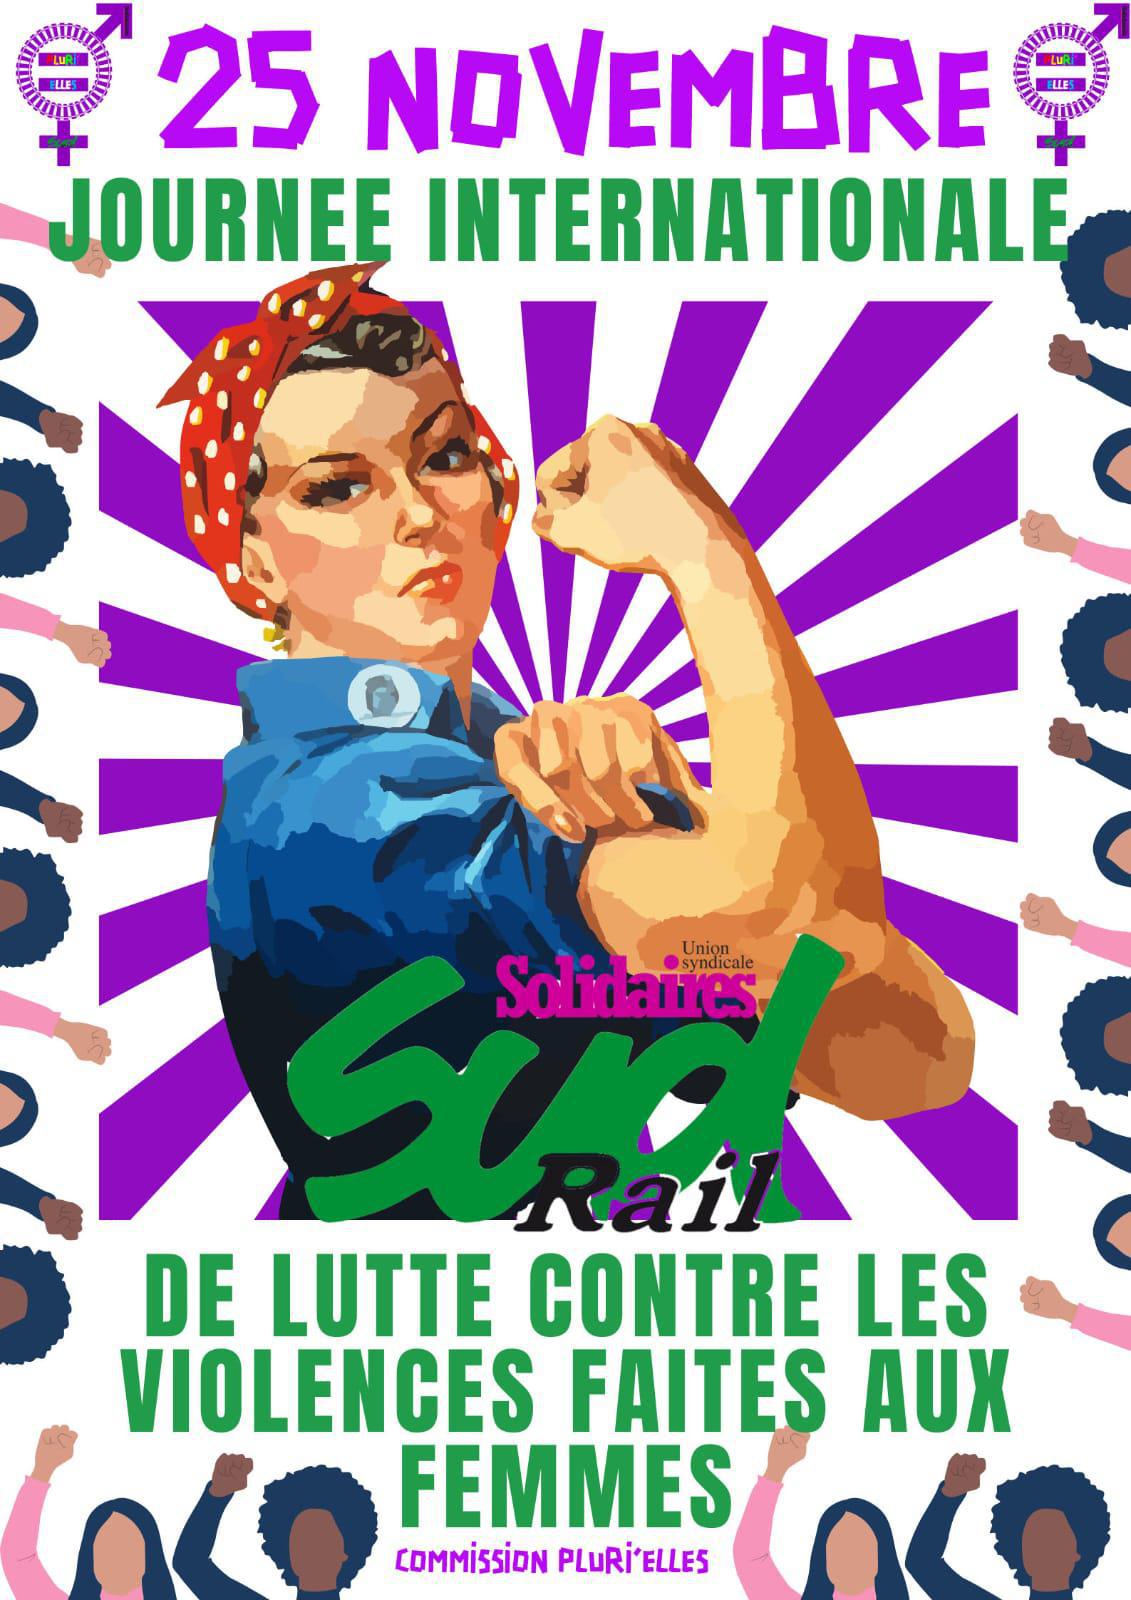 25 Novembre, journée internationale de lutte contre les violences faites aux femmes.